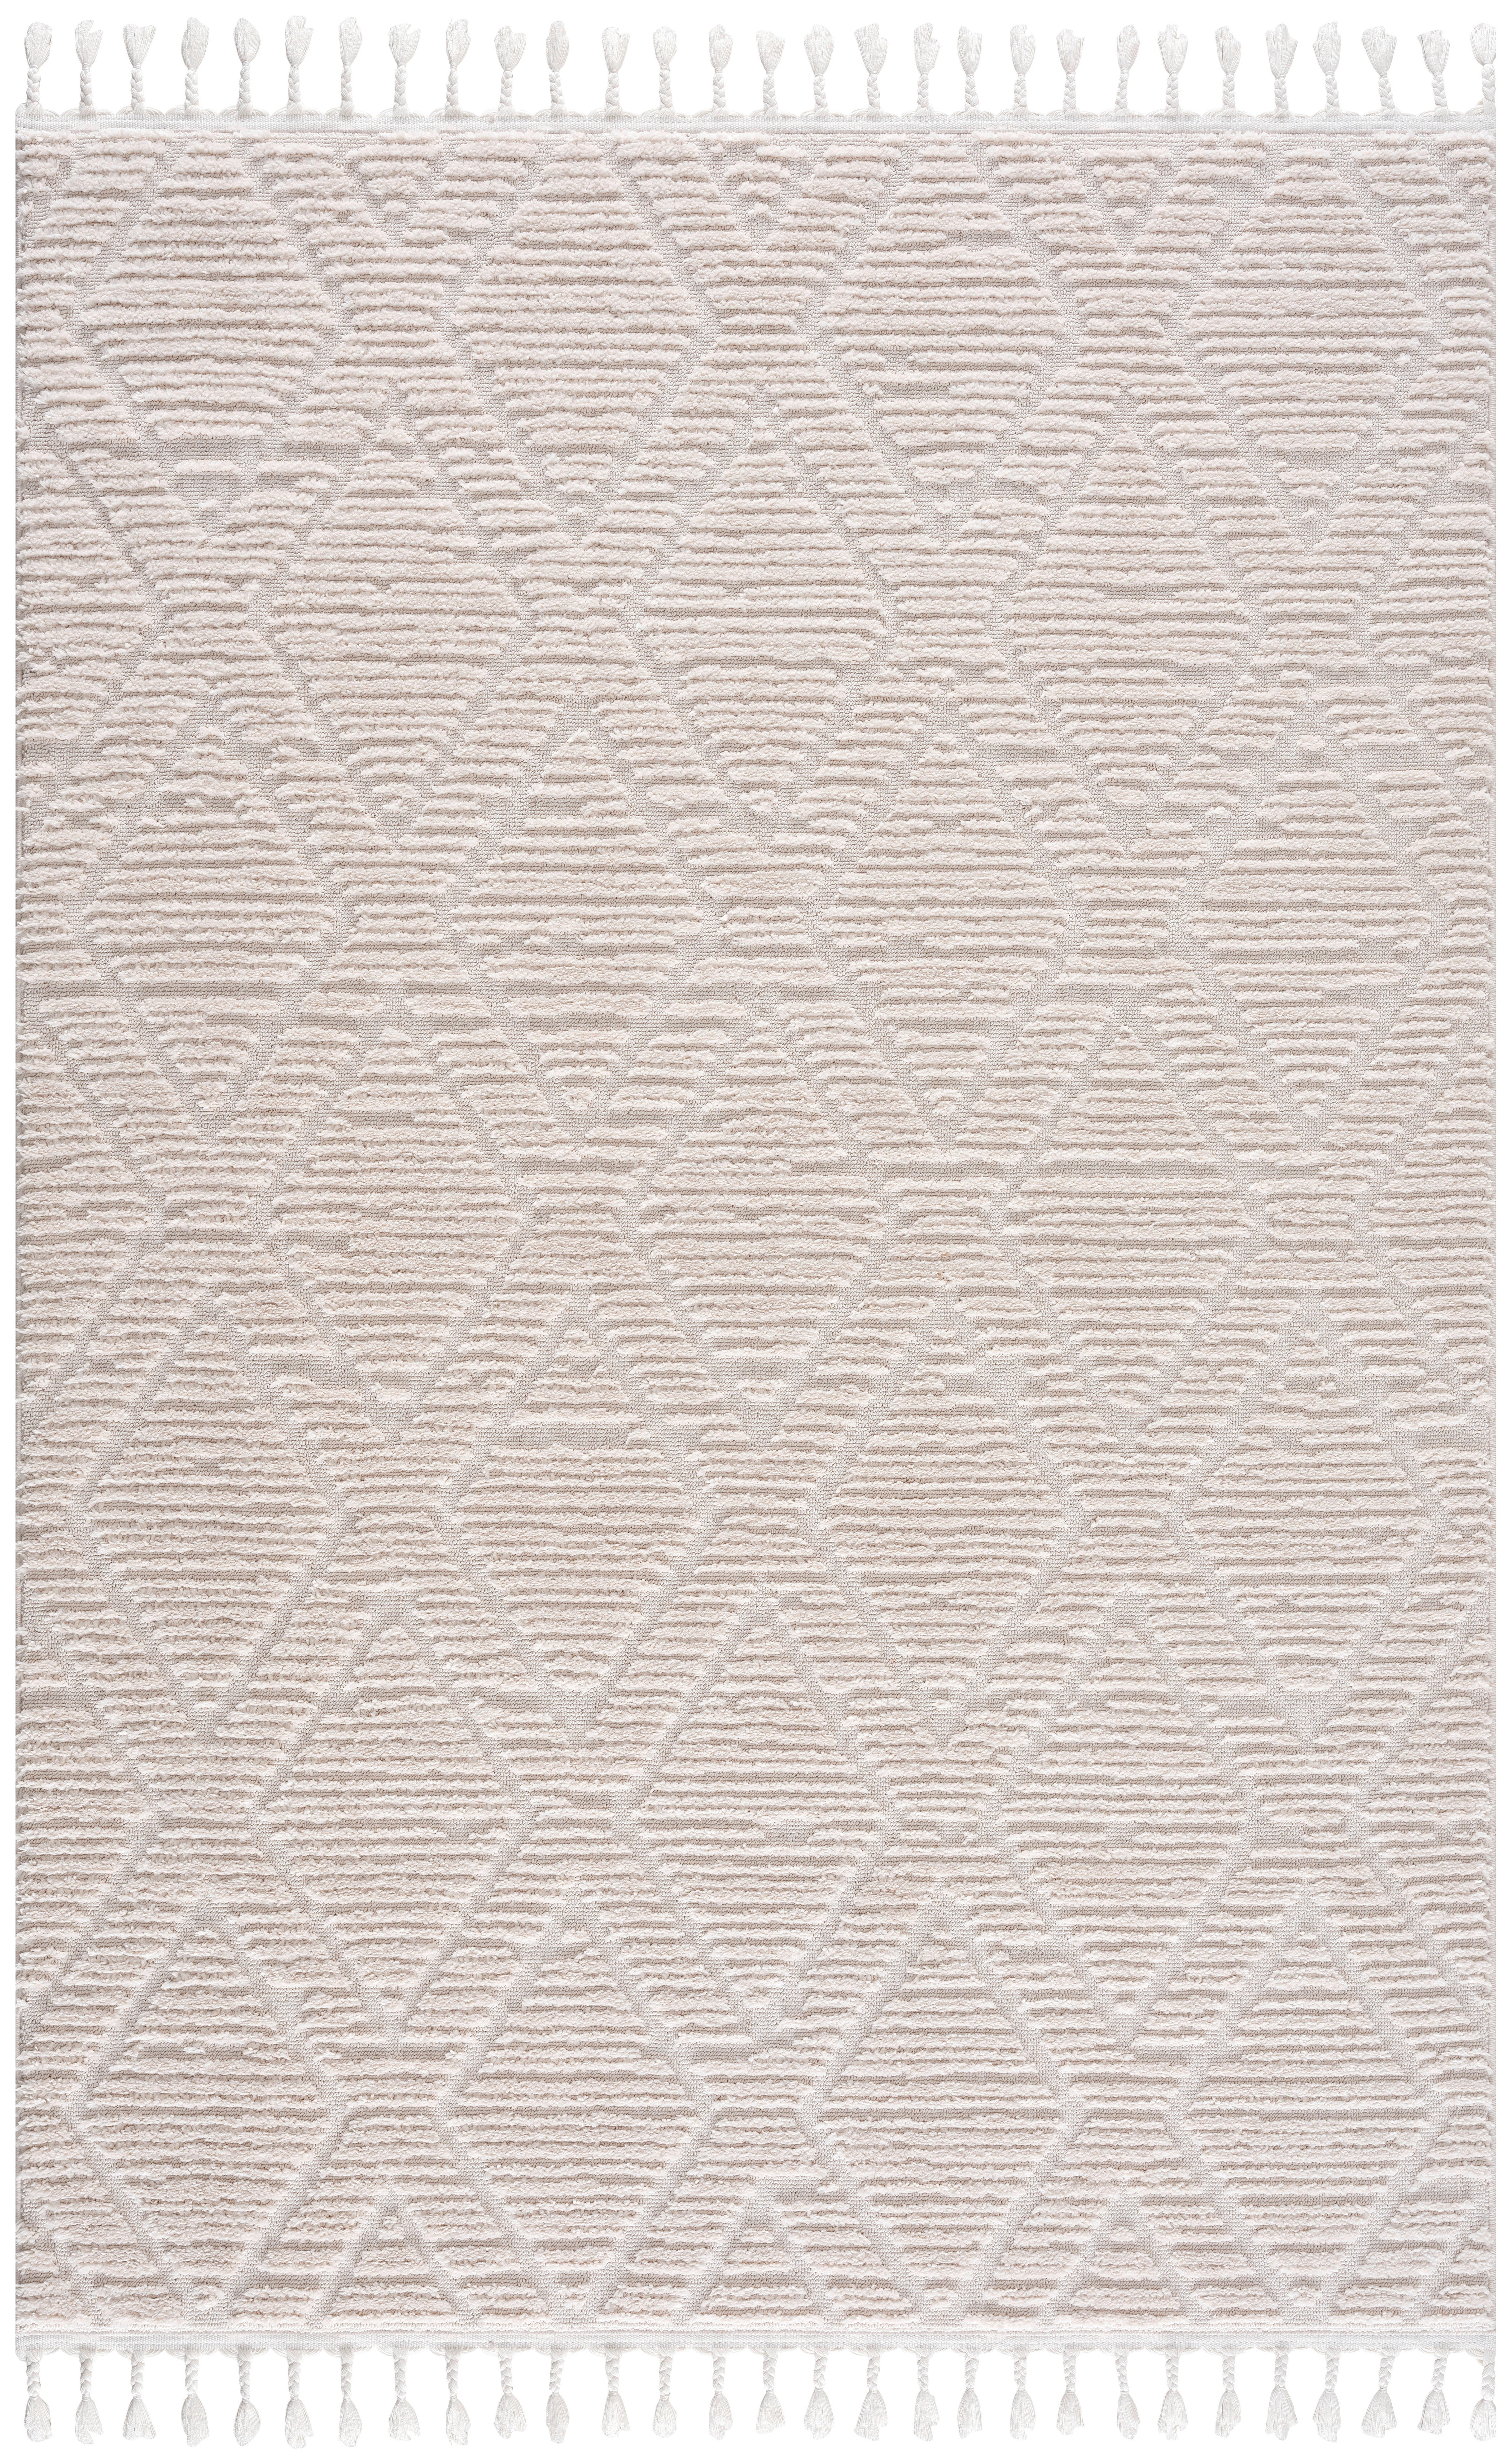 WEBTEPPICH 160/230 cm  - Weiß, MODERN, Textil (160/230cm)